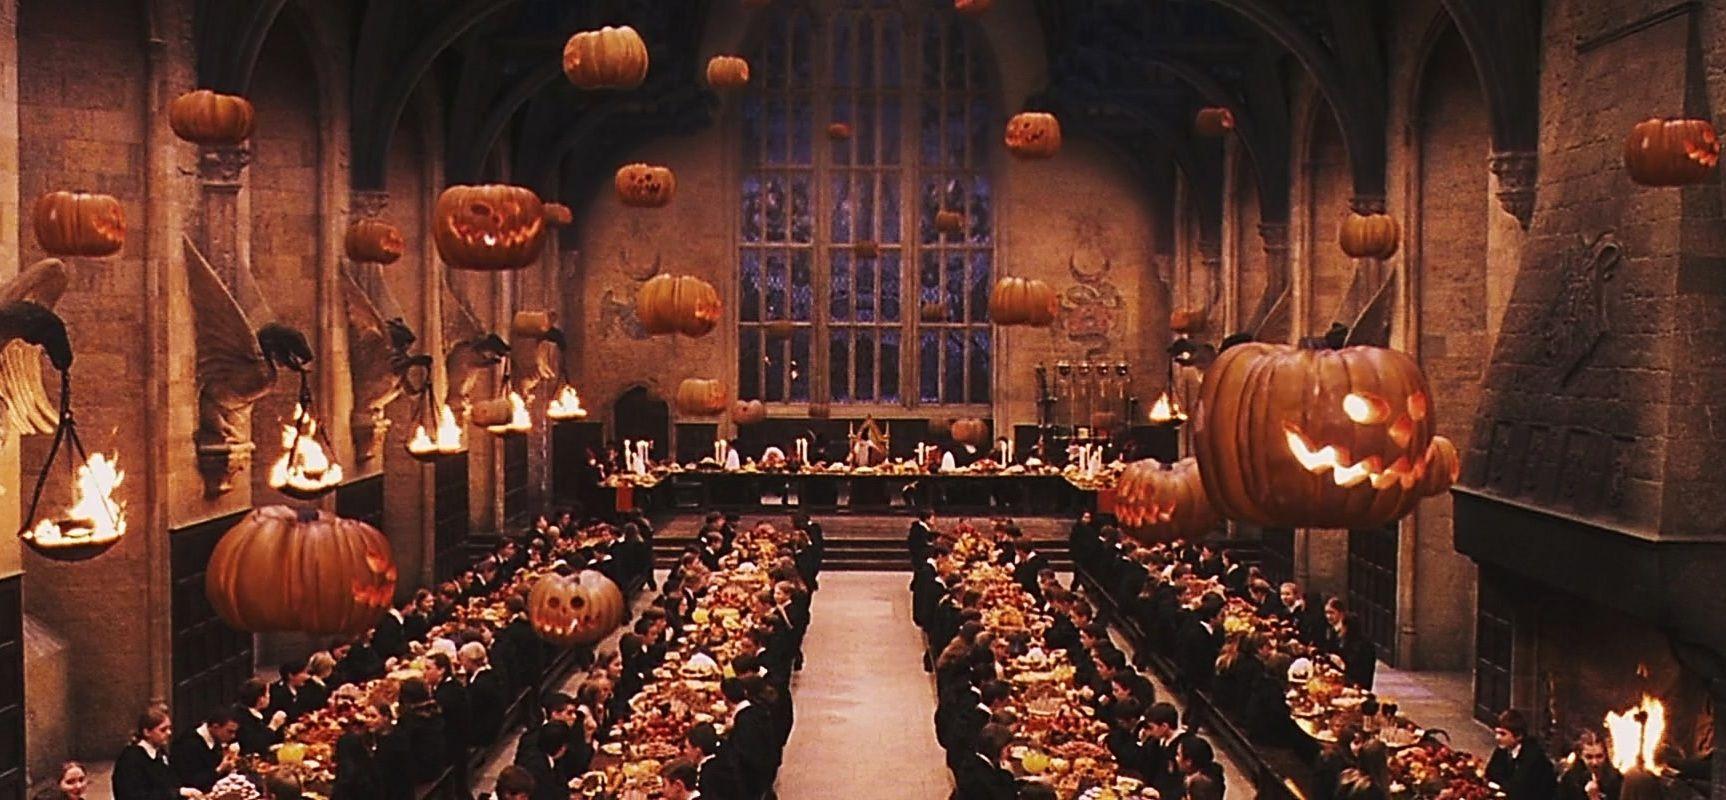 Hình nền Halloween Harry Potter - Hãy thỏa sức khám phá thế giới ma thuật mà không gì có thể thú vị hơn với những hình nền Halloween Harry Potter. Tạo cảm giác ma mị và kỳ bí trên màn hình của bạn ngay hôm nay.